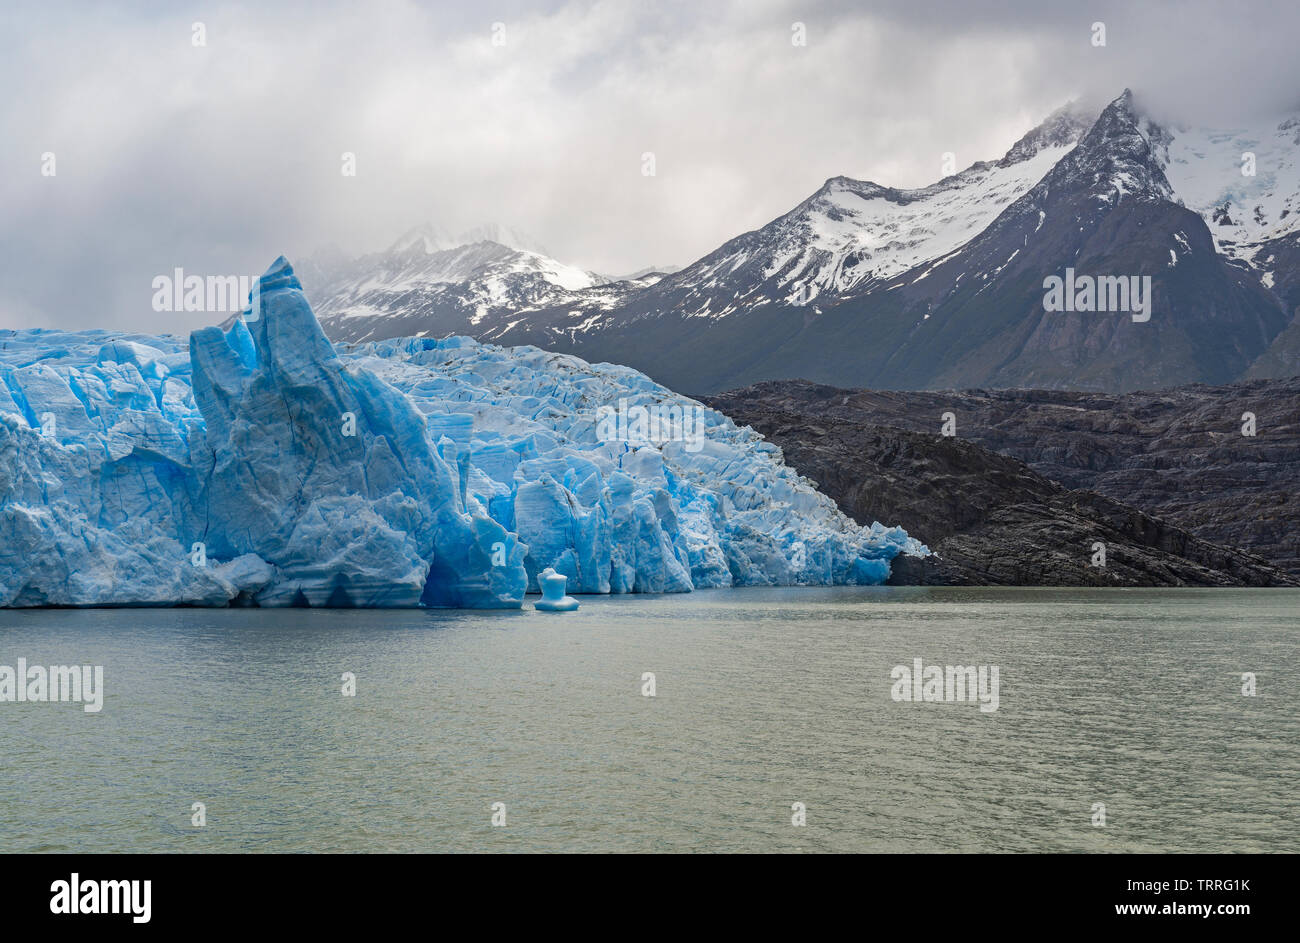 Il blue ice ghiacciaio Grey con picchi andini nella neve dal grigio Lago, Parco nazionale di Torres del Paine nella Patagonia cilena. Foto Stock